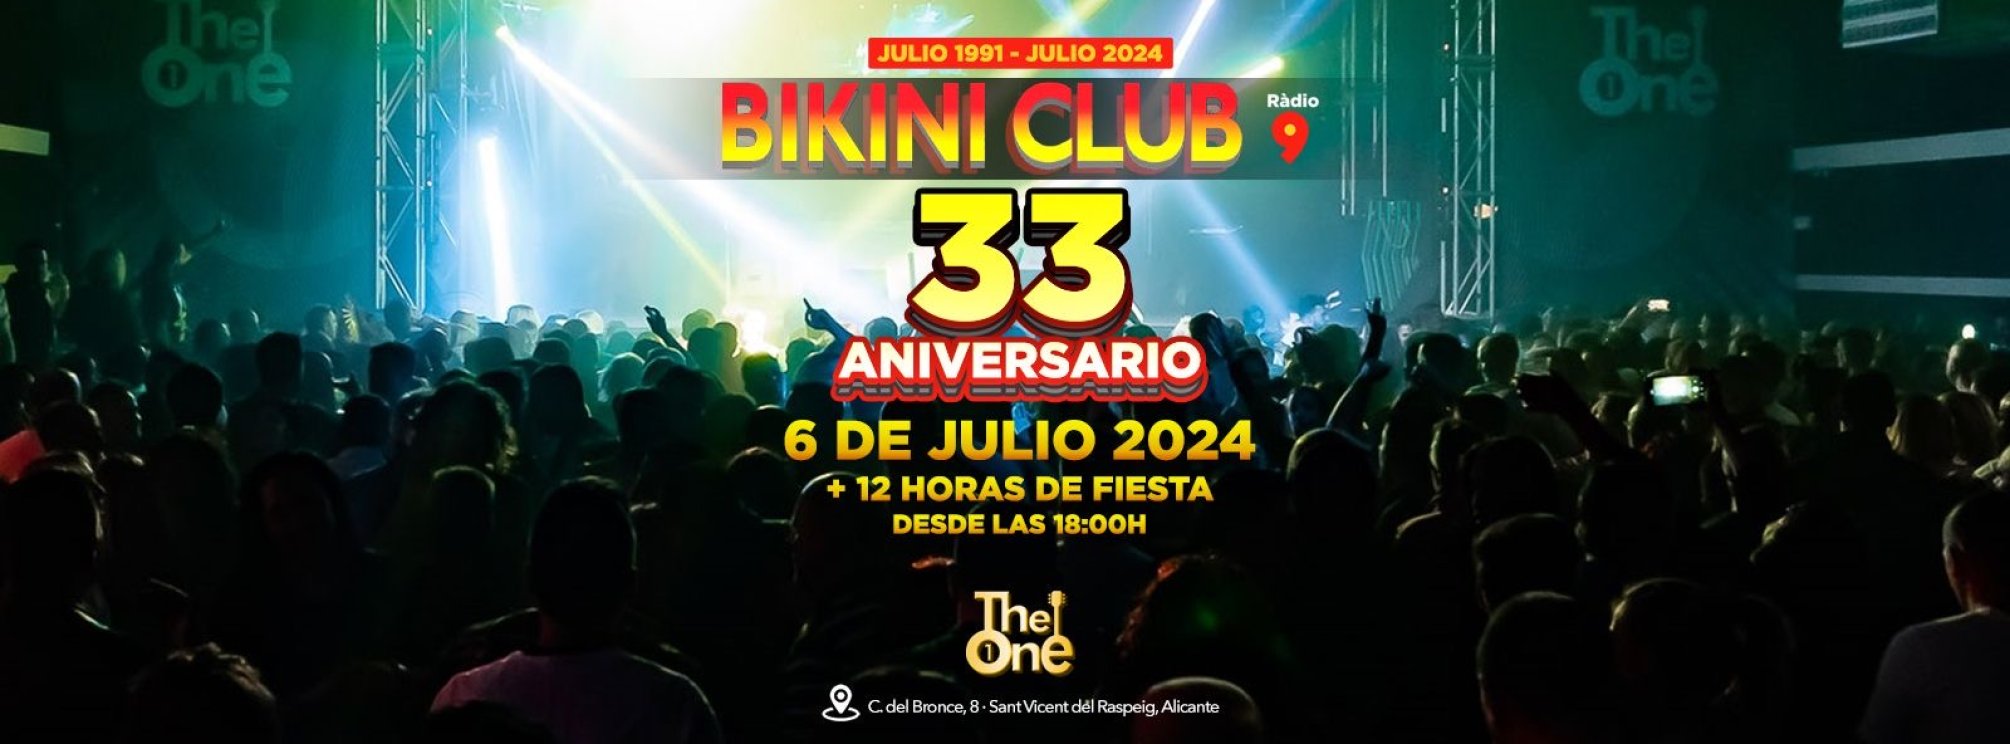 REMEMBER THE ONE | 6 de Julio 2024 | BIKINI CLUB 33 ANIVERSARIO